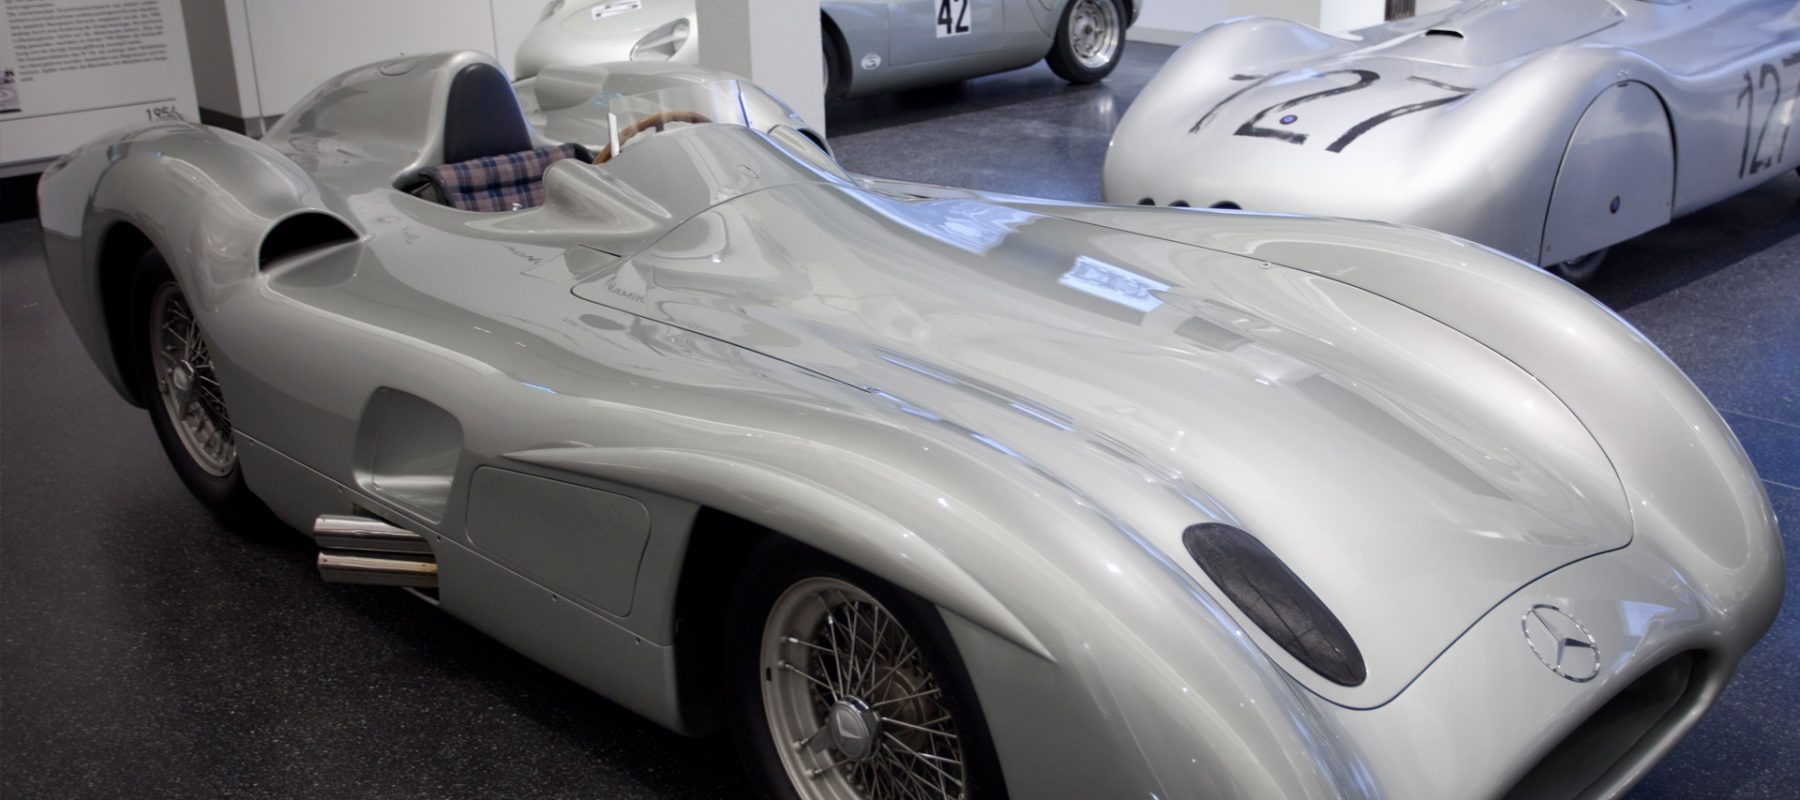 2009 präsentierte das Hamburger Automuseum Prototyp mit der Sonderausstellung „Stromlinie“ außergewöhnliche aerodynamische Fahrzeuge, wie den Porsche Typ 64 oder den Mercedes-Benz C 111-3 Nardo.